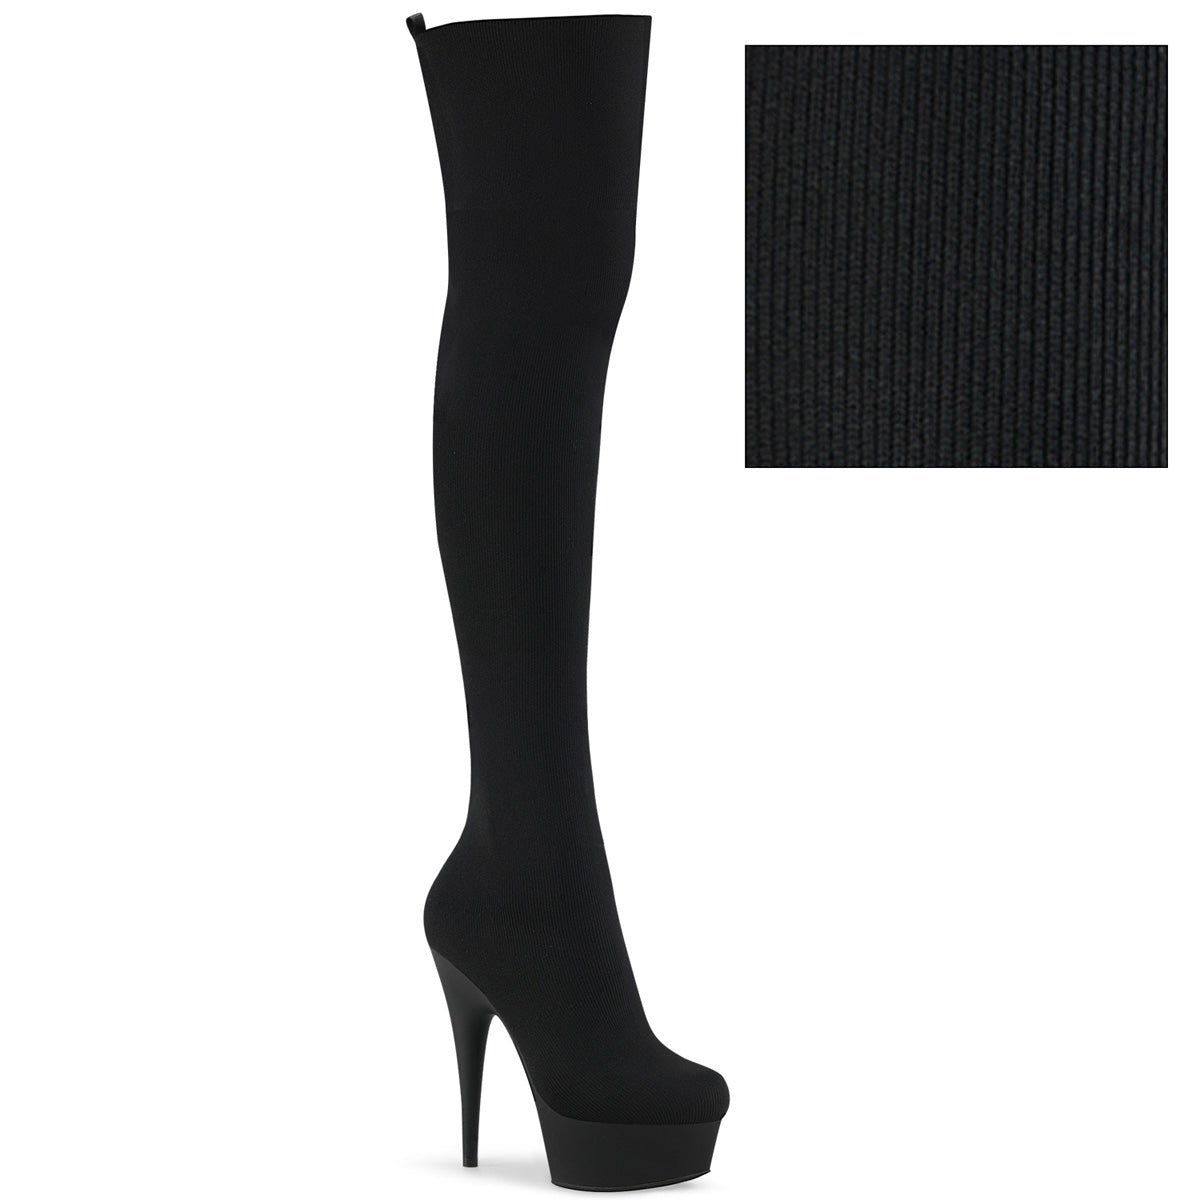 Pleaser Stivali da donna DELIGHT-3002-1 tessuto a maglia elasticizzato BLK / BLK opaco